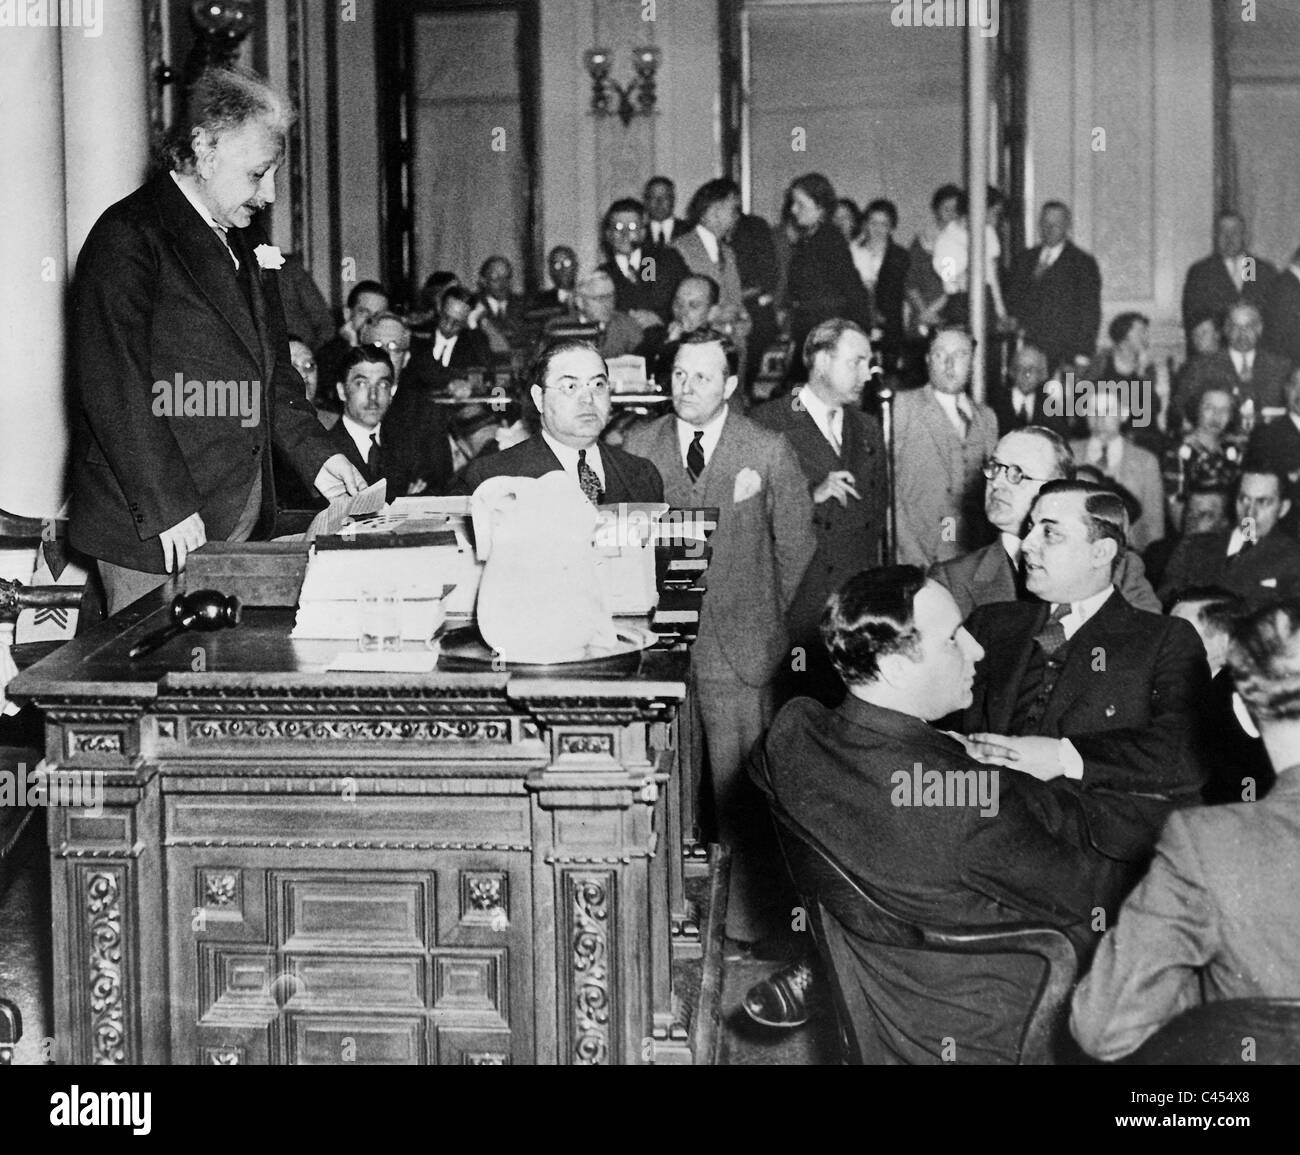 Albert Einstein est titulaire d'un discours, 1934 Banque D'Images